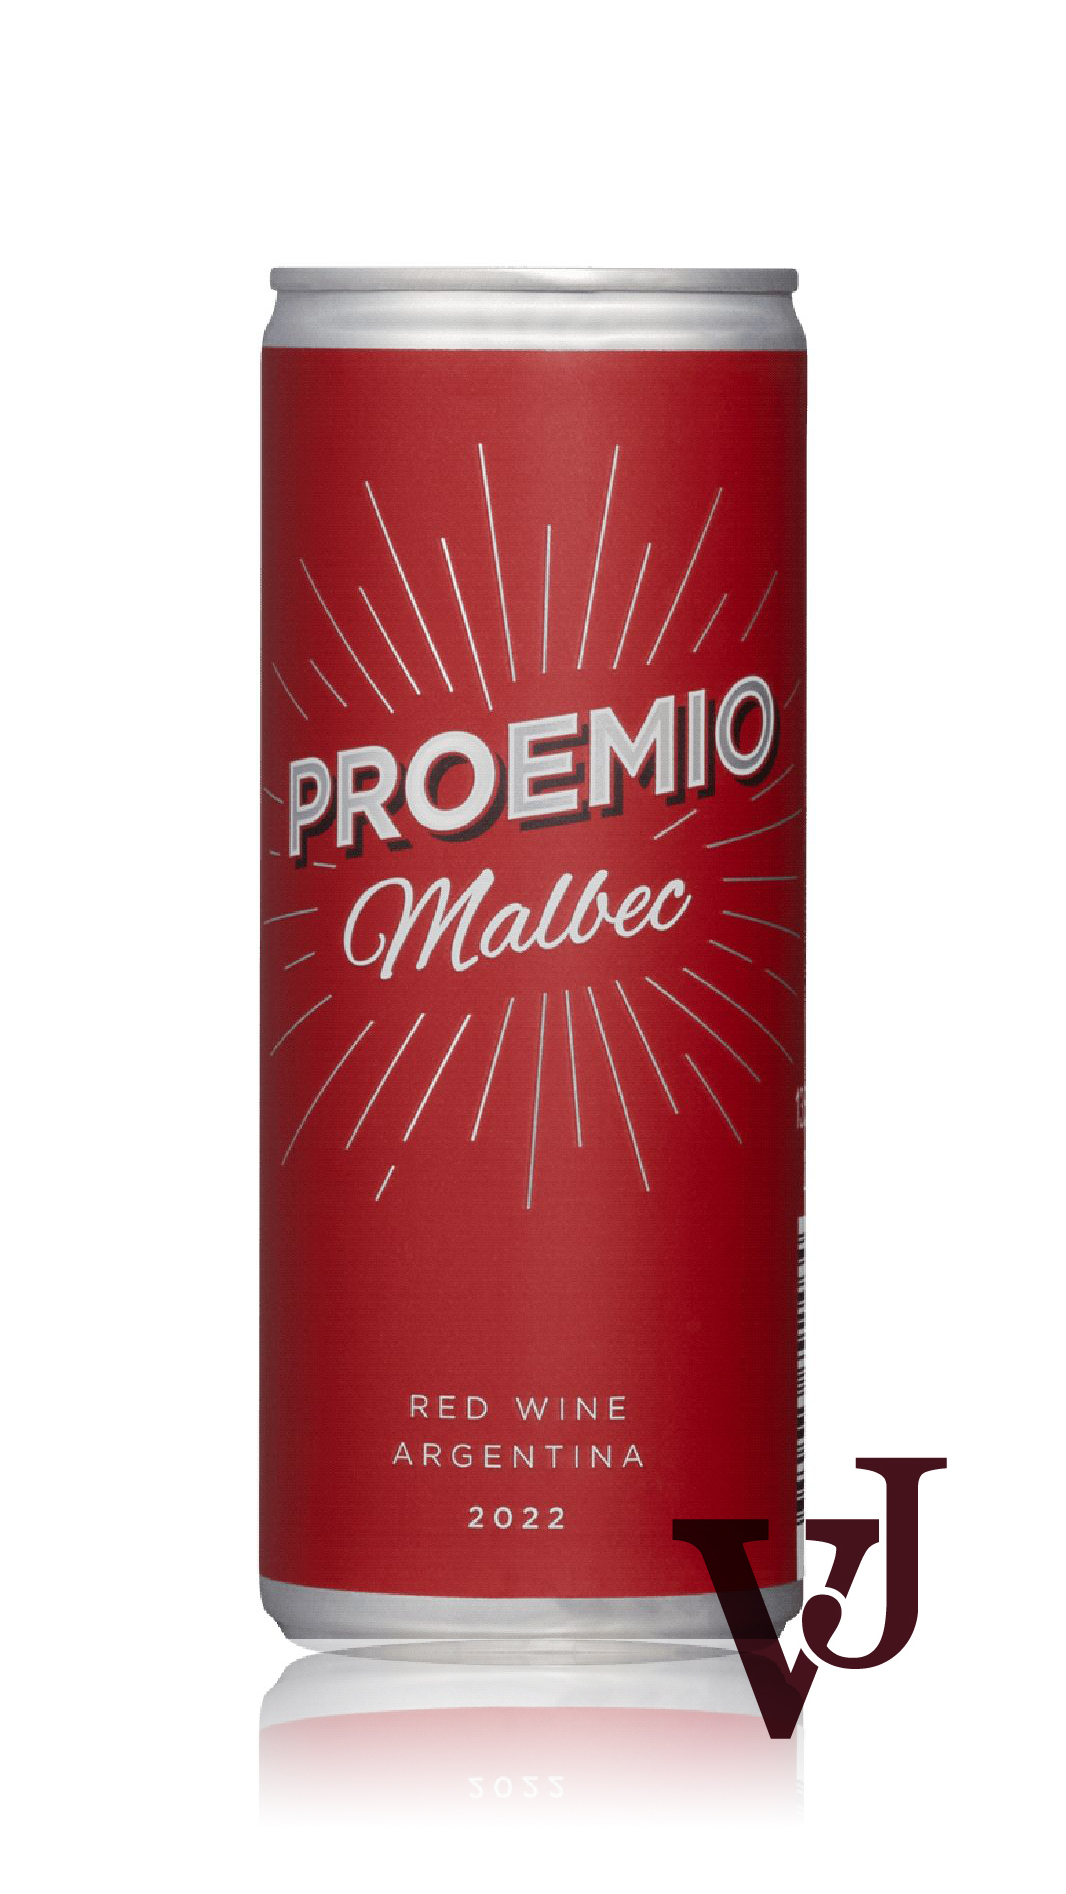 Rött Vin - Proemio Malbec 2022 artikel nummer 254914 från producenten Miravalles S.A. från området Argentina